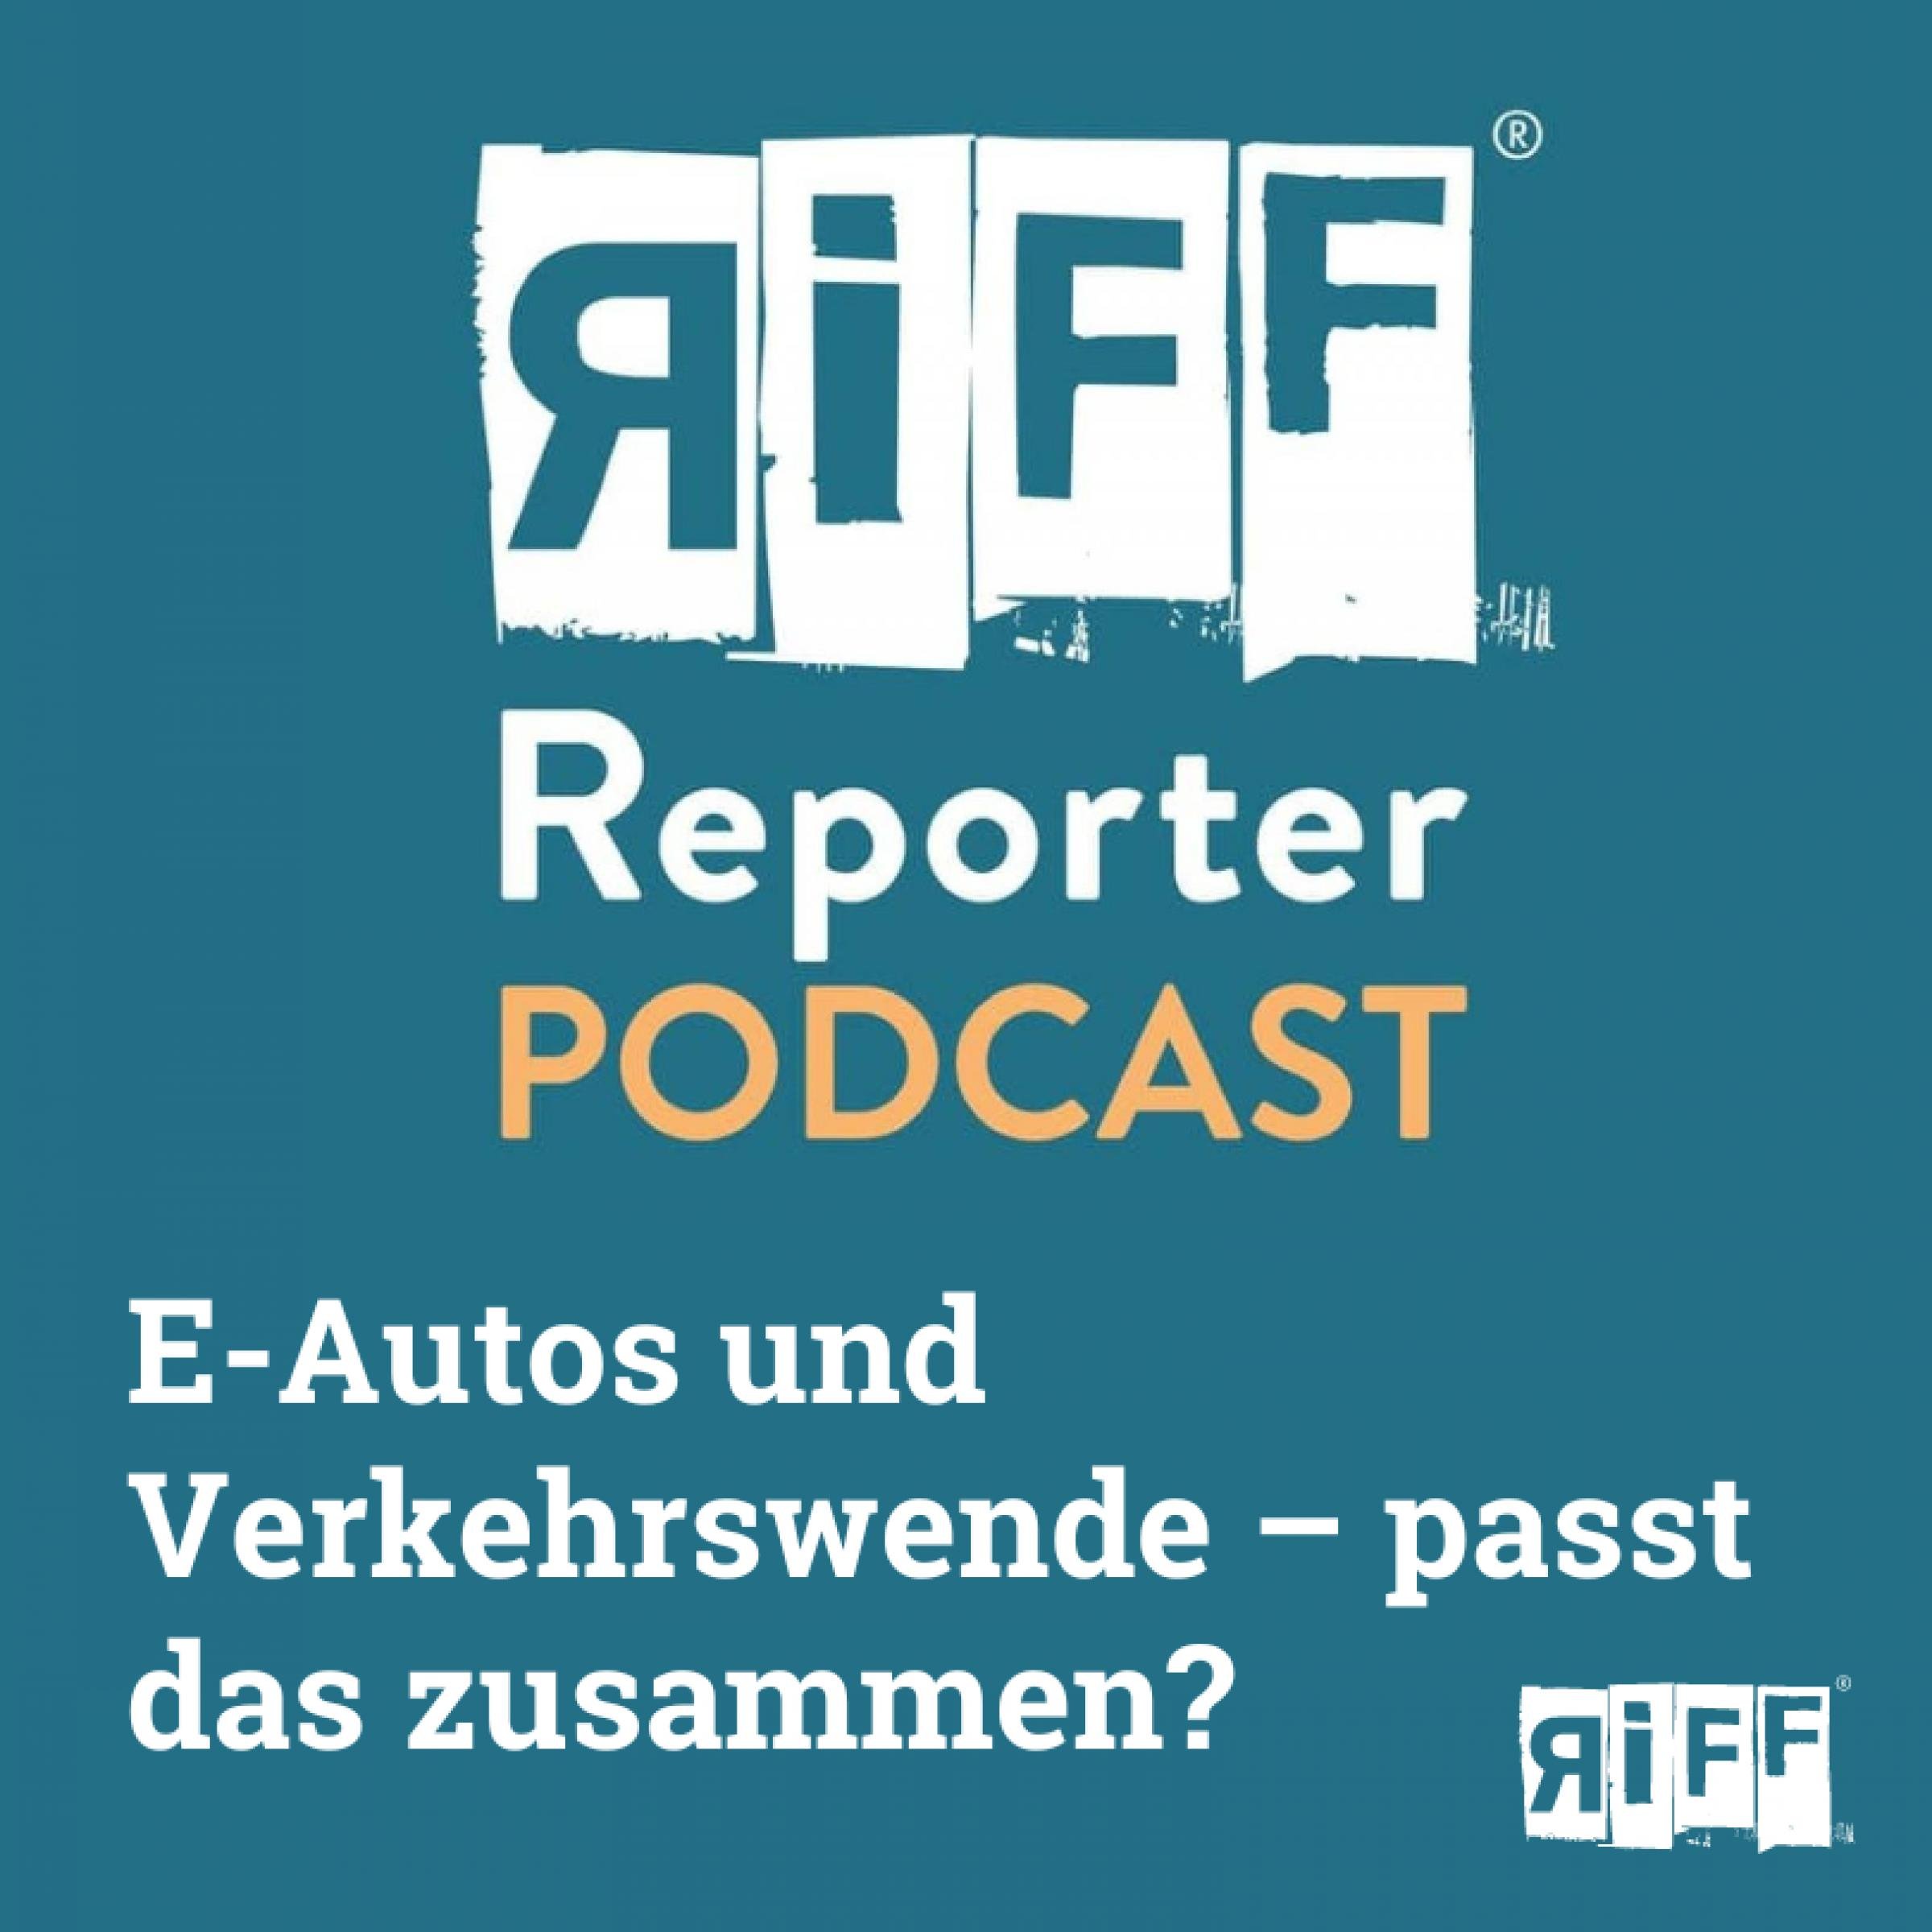 RiffReporter-Podcast: E-Autos und Verkehrswende – passt das zusammen?